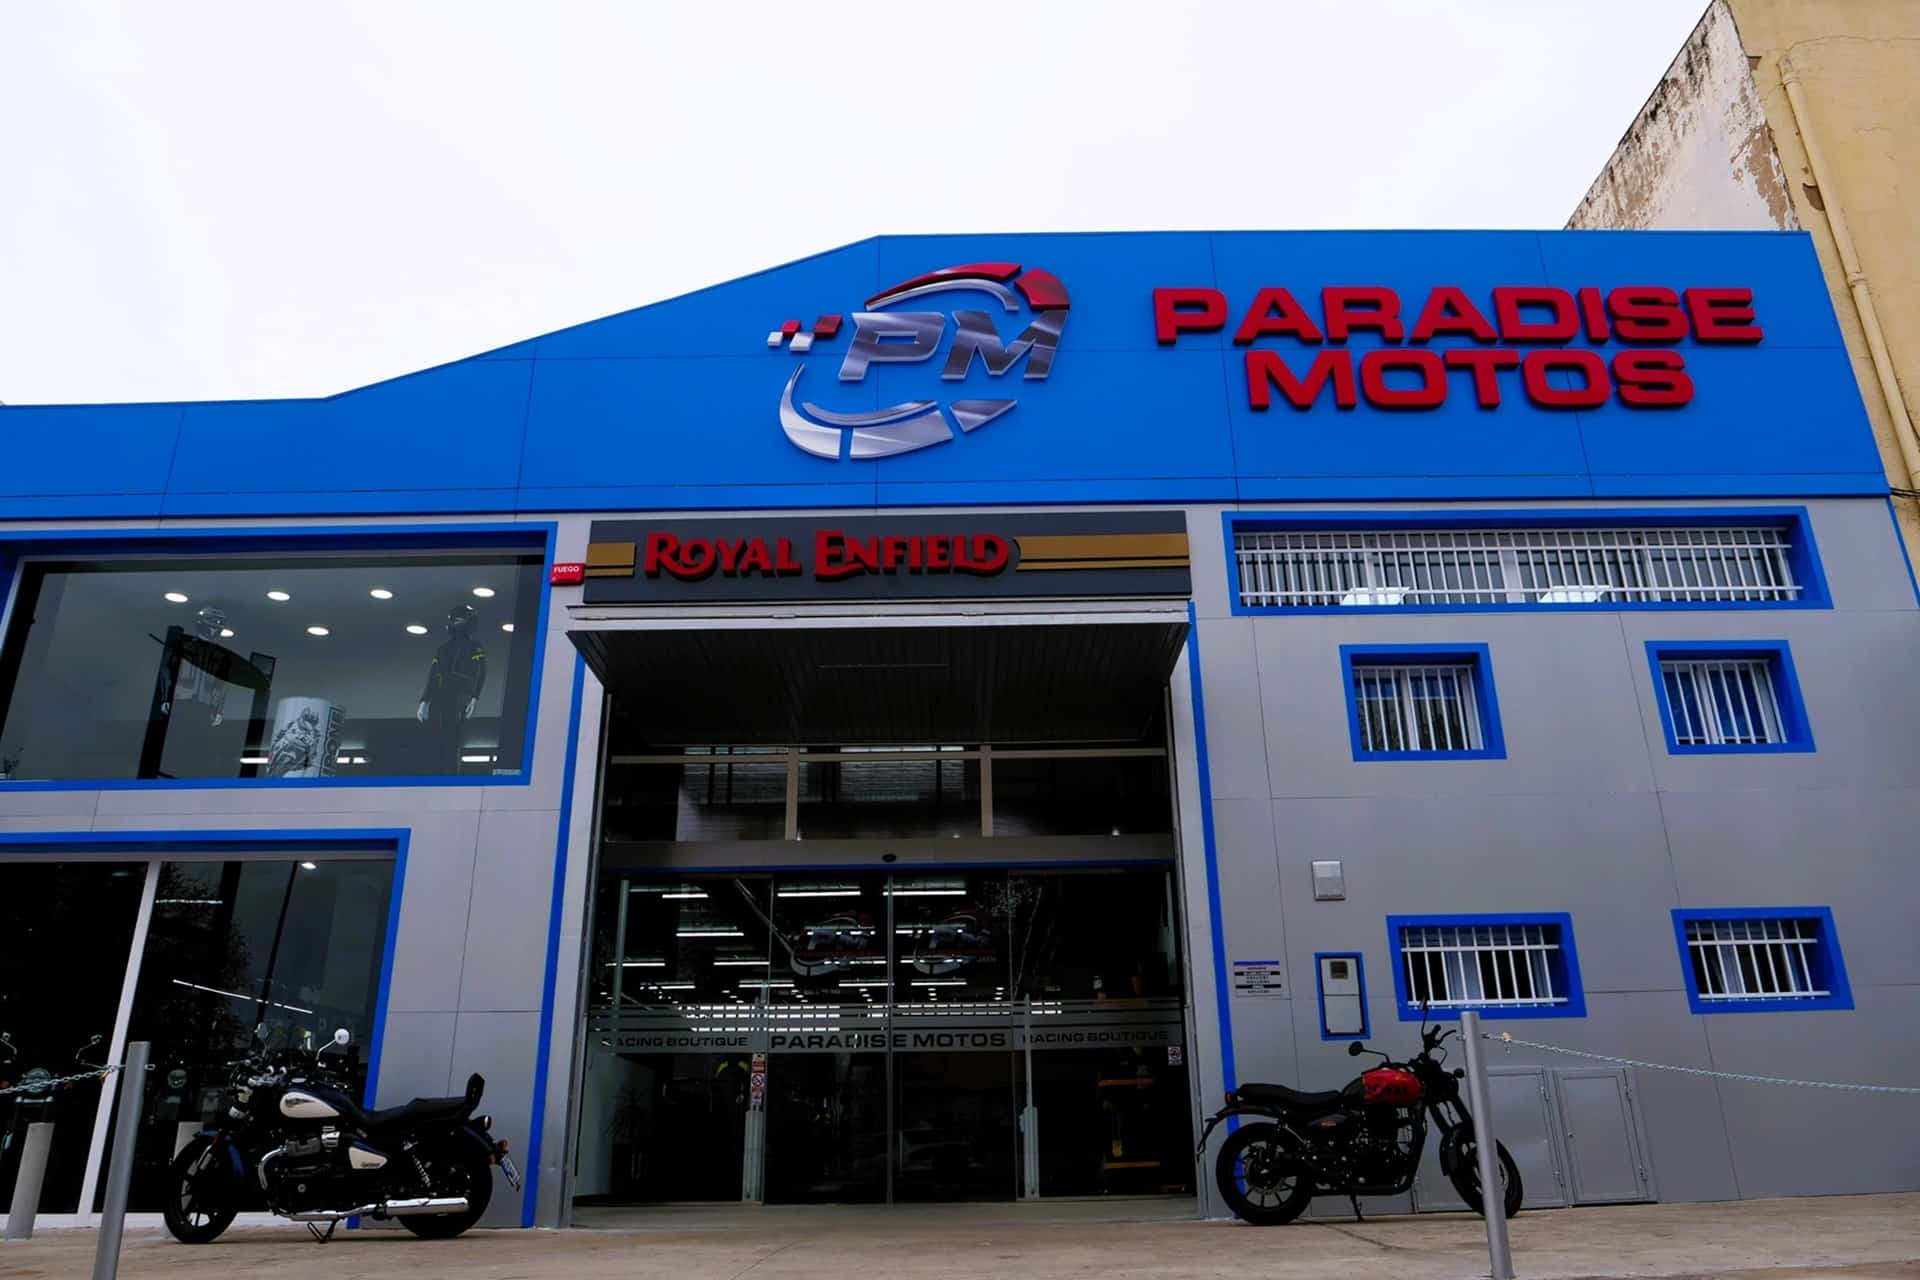 Royal Enfield inaugura Paradise Motos, su nueva tienda en Jaén